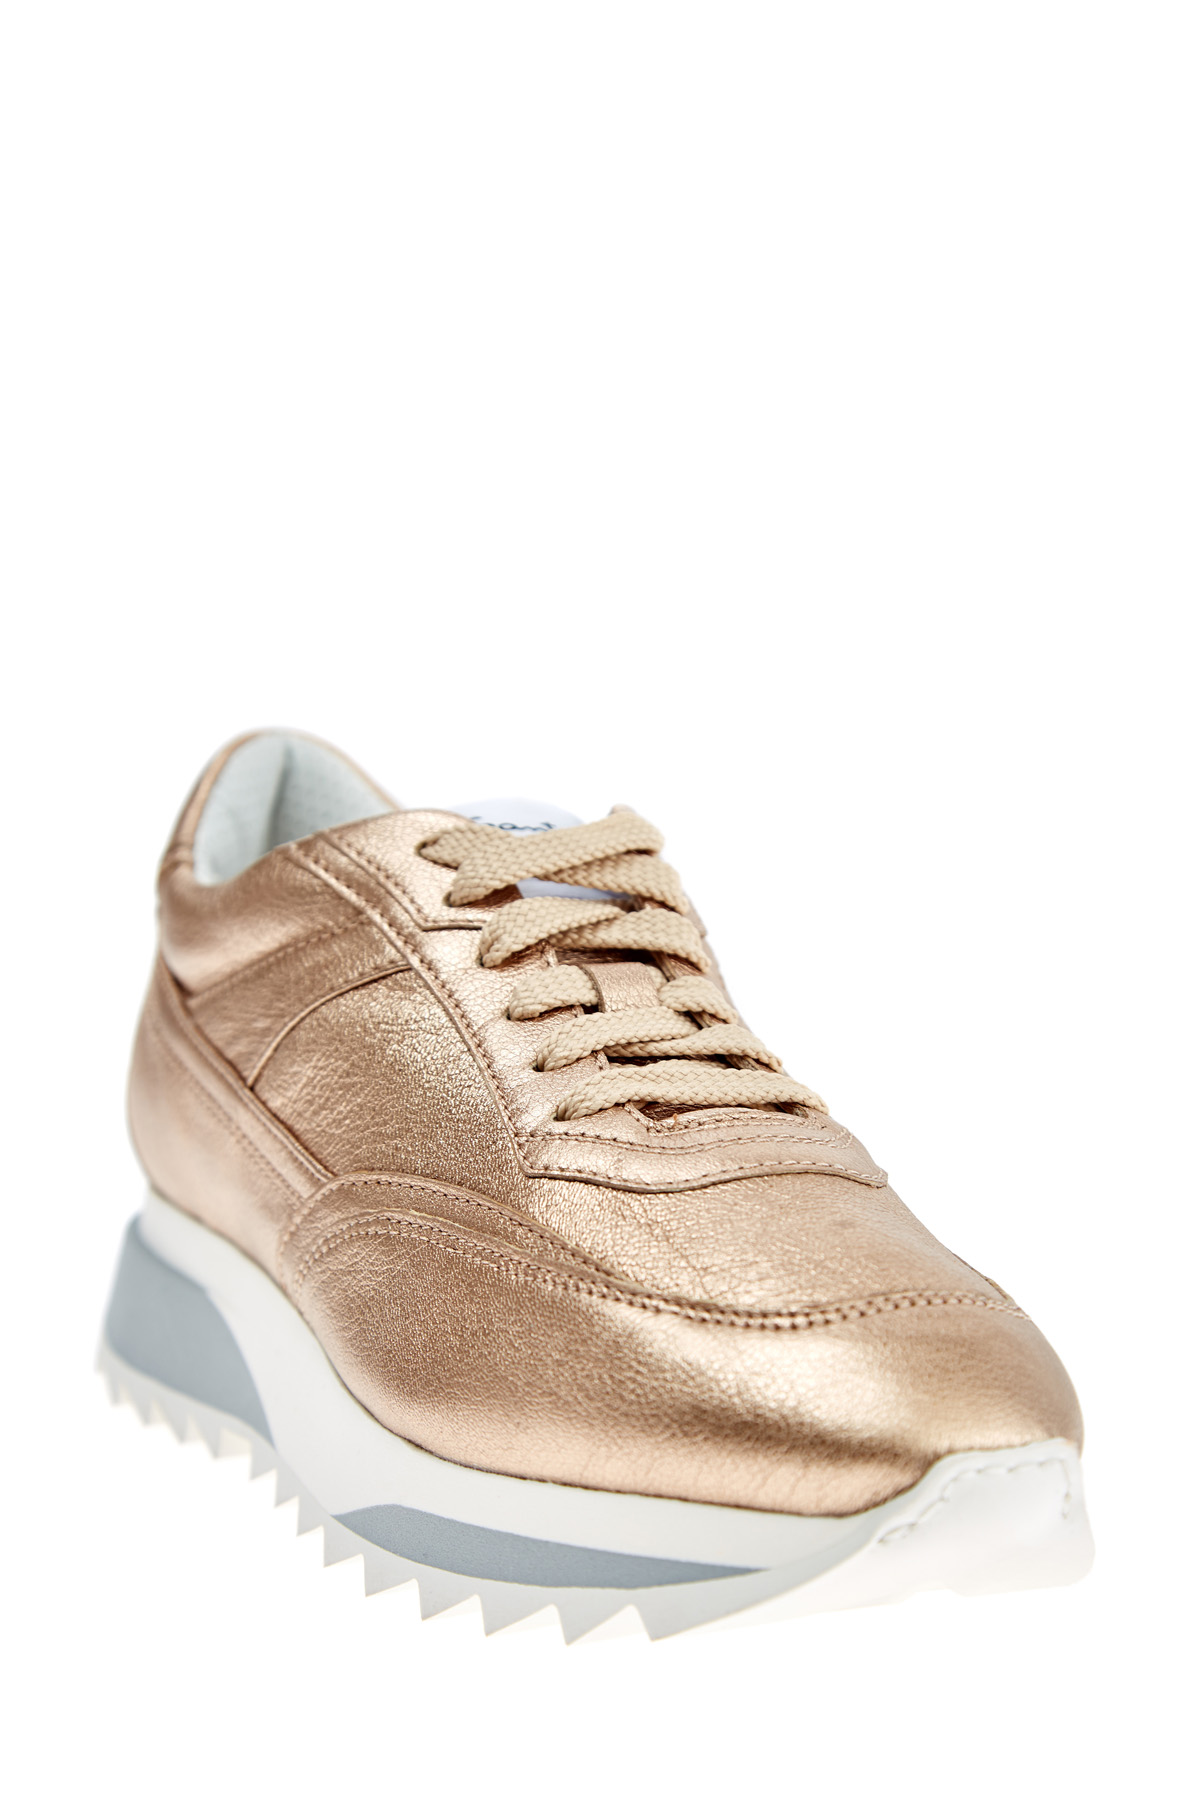 Кроссовки с металлизированной отделкой золотистого цвета SANTONI, размер 36.5;37 - фото 3